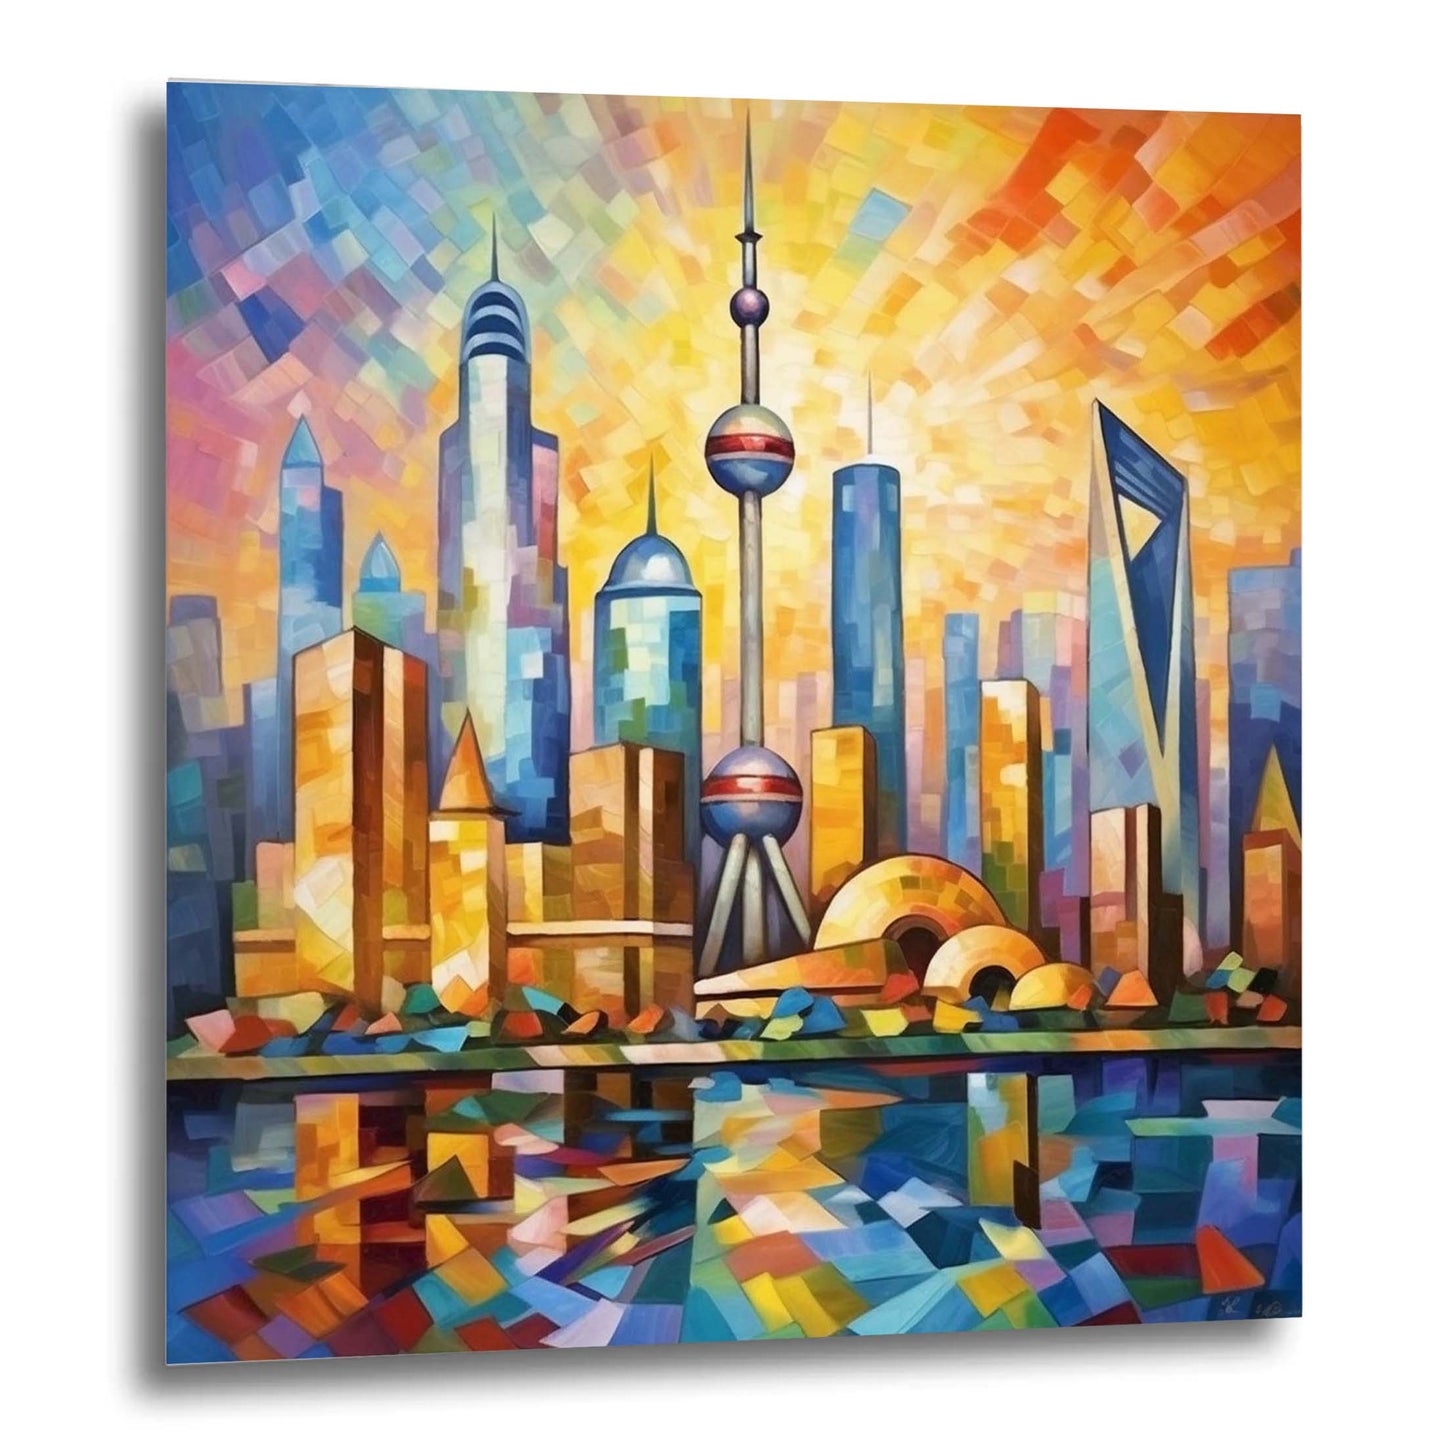 Shanghai Skyline - peinture murale dans le style de l'expressionnisme